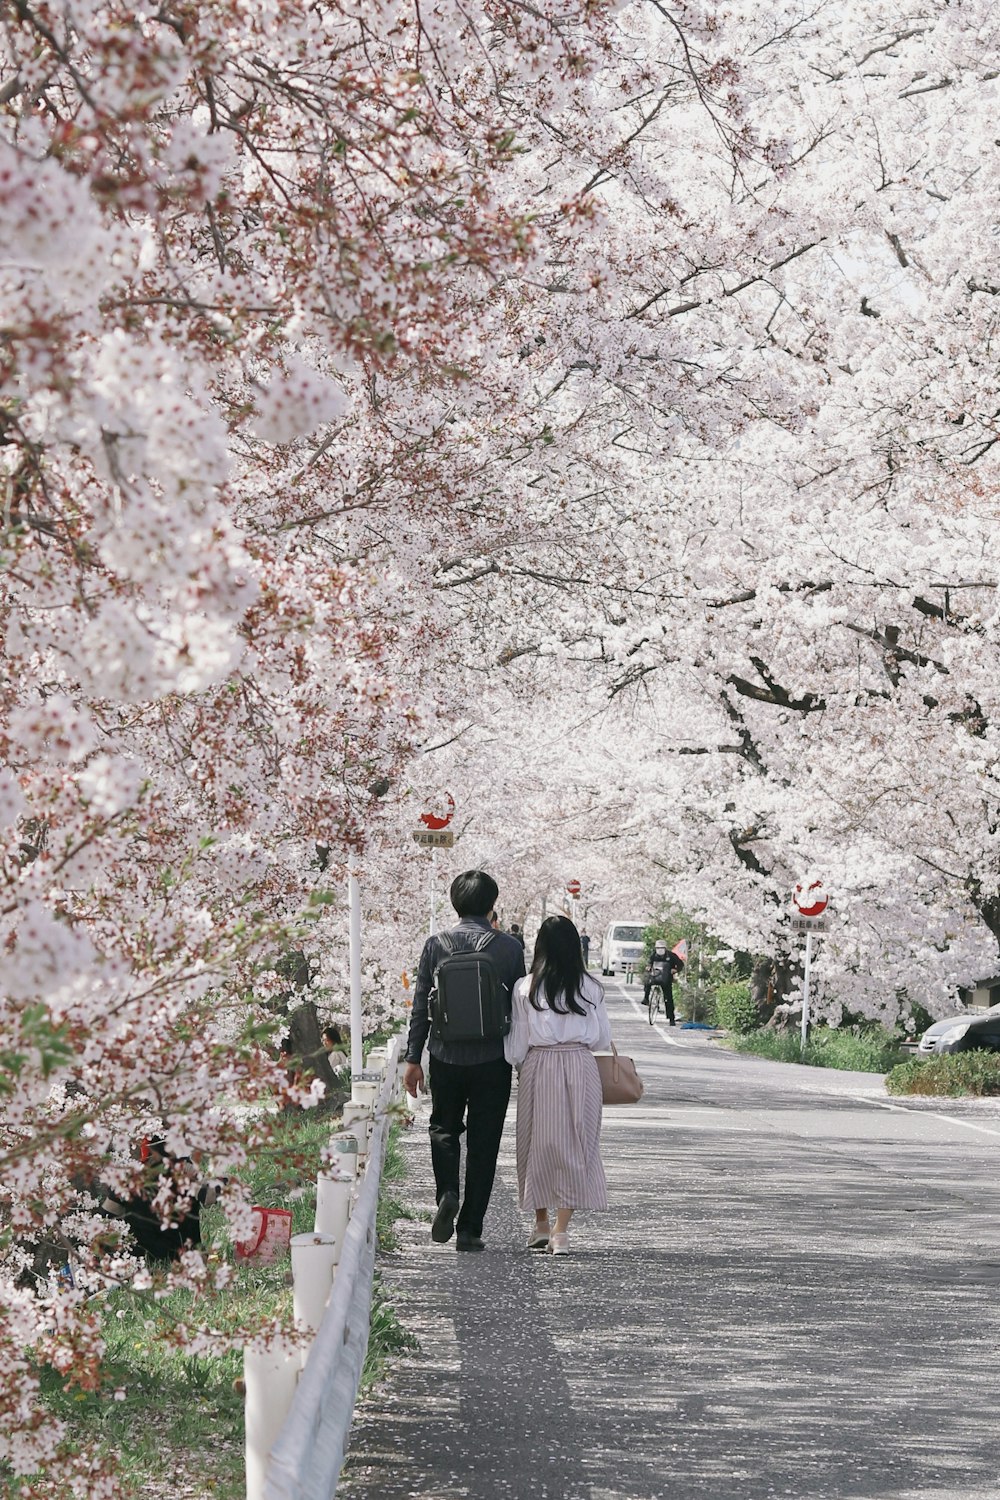 昼間、桜の木の間の道を歩く男女